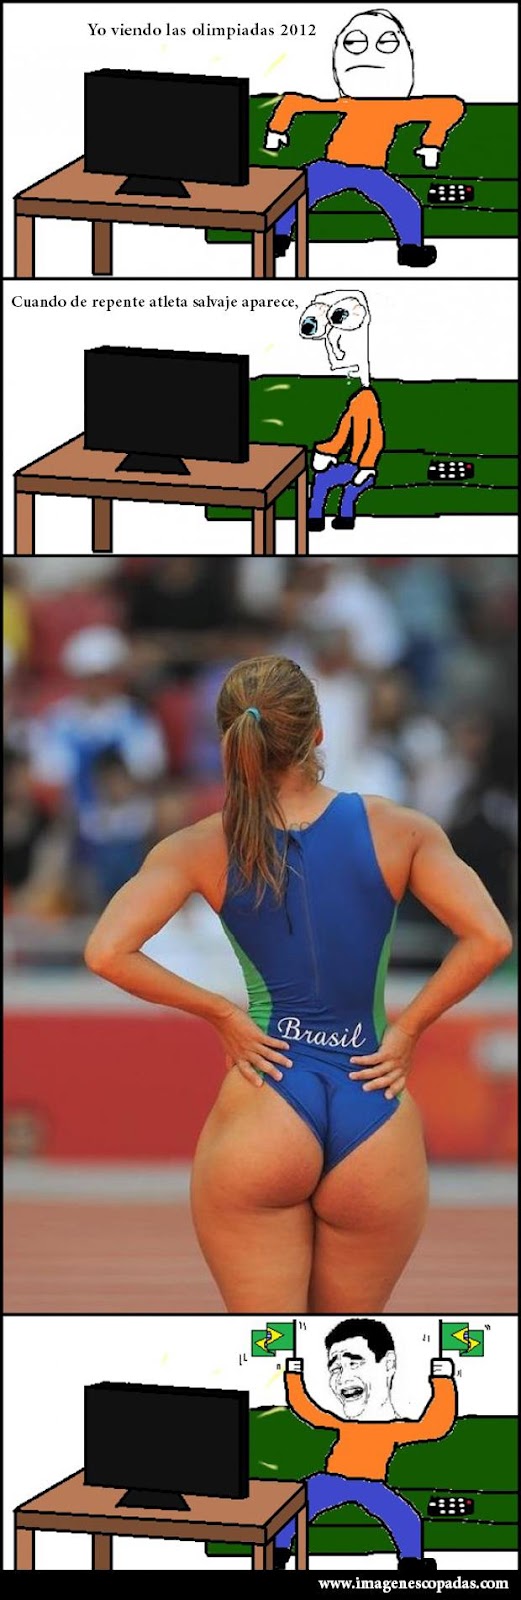 atleta-mujeres-olimpiadas